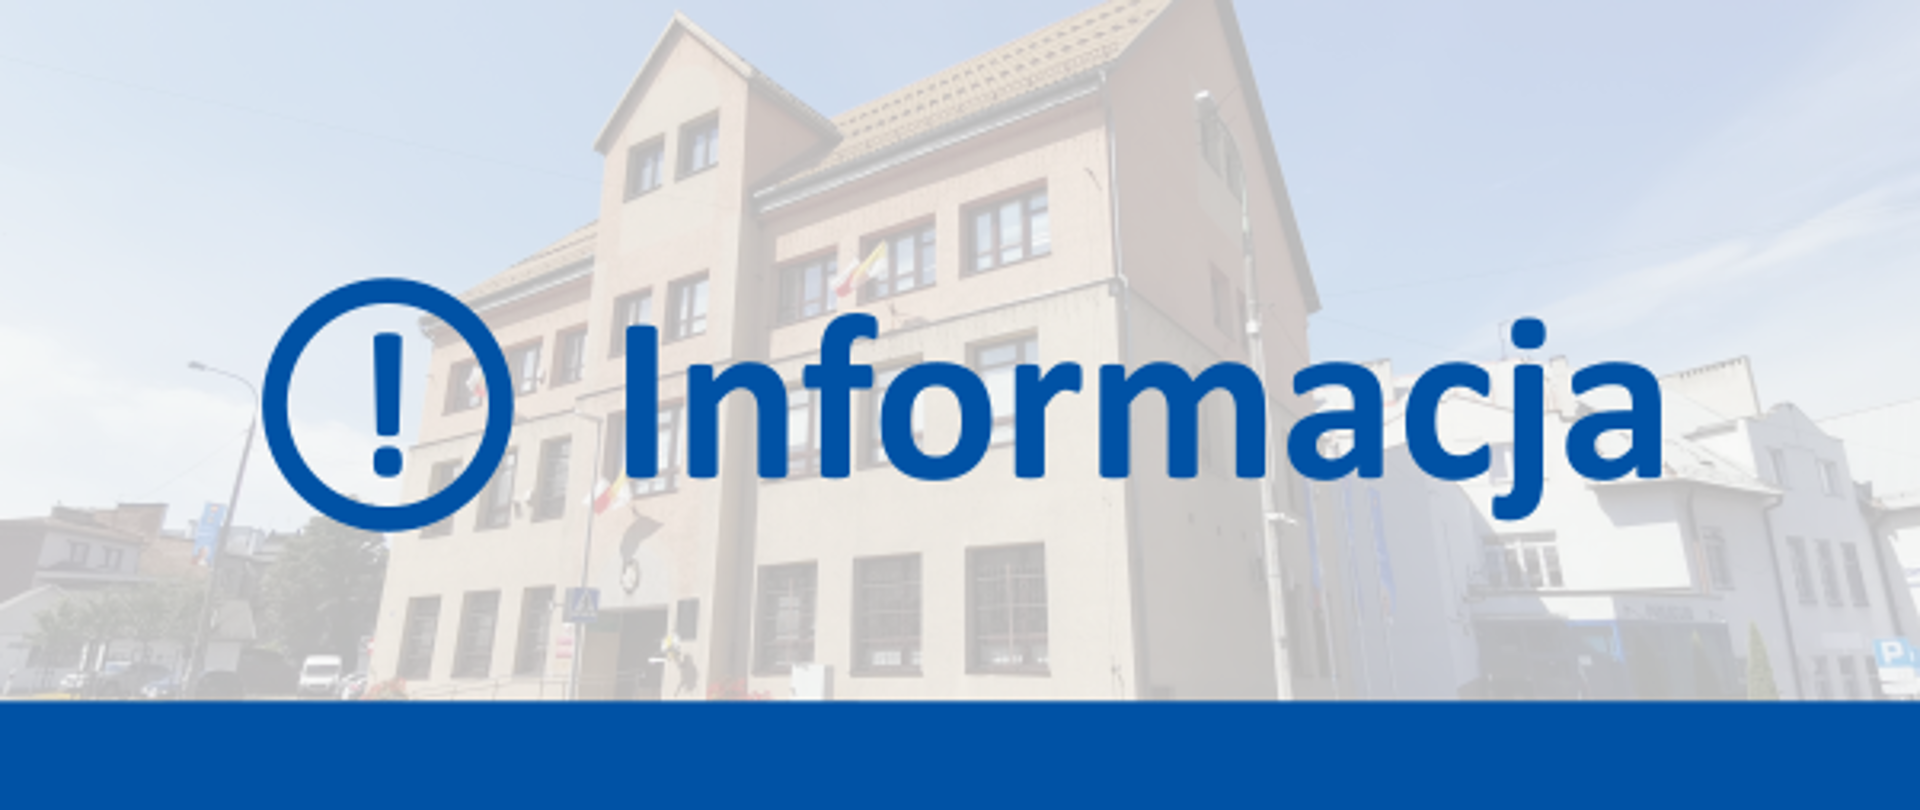 Niebieski napis "informacja" i niebieska linia pozioma przy dolnej krawędzi grafiki. W tle fotografia budynku Urzędu Miasta Kalwarii Zebrzydowskiej.